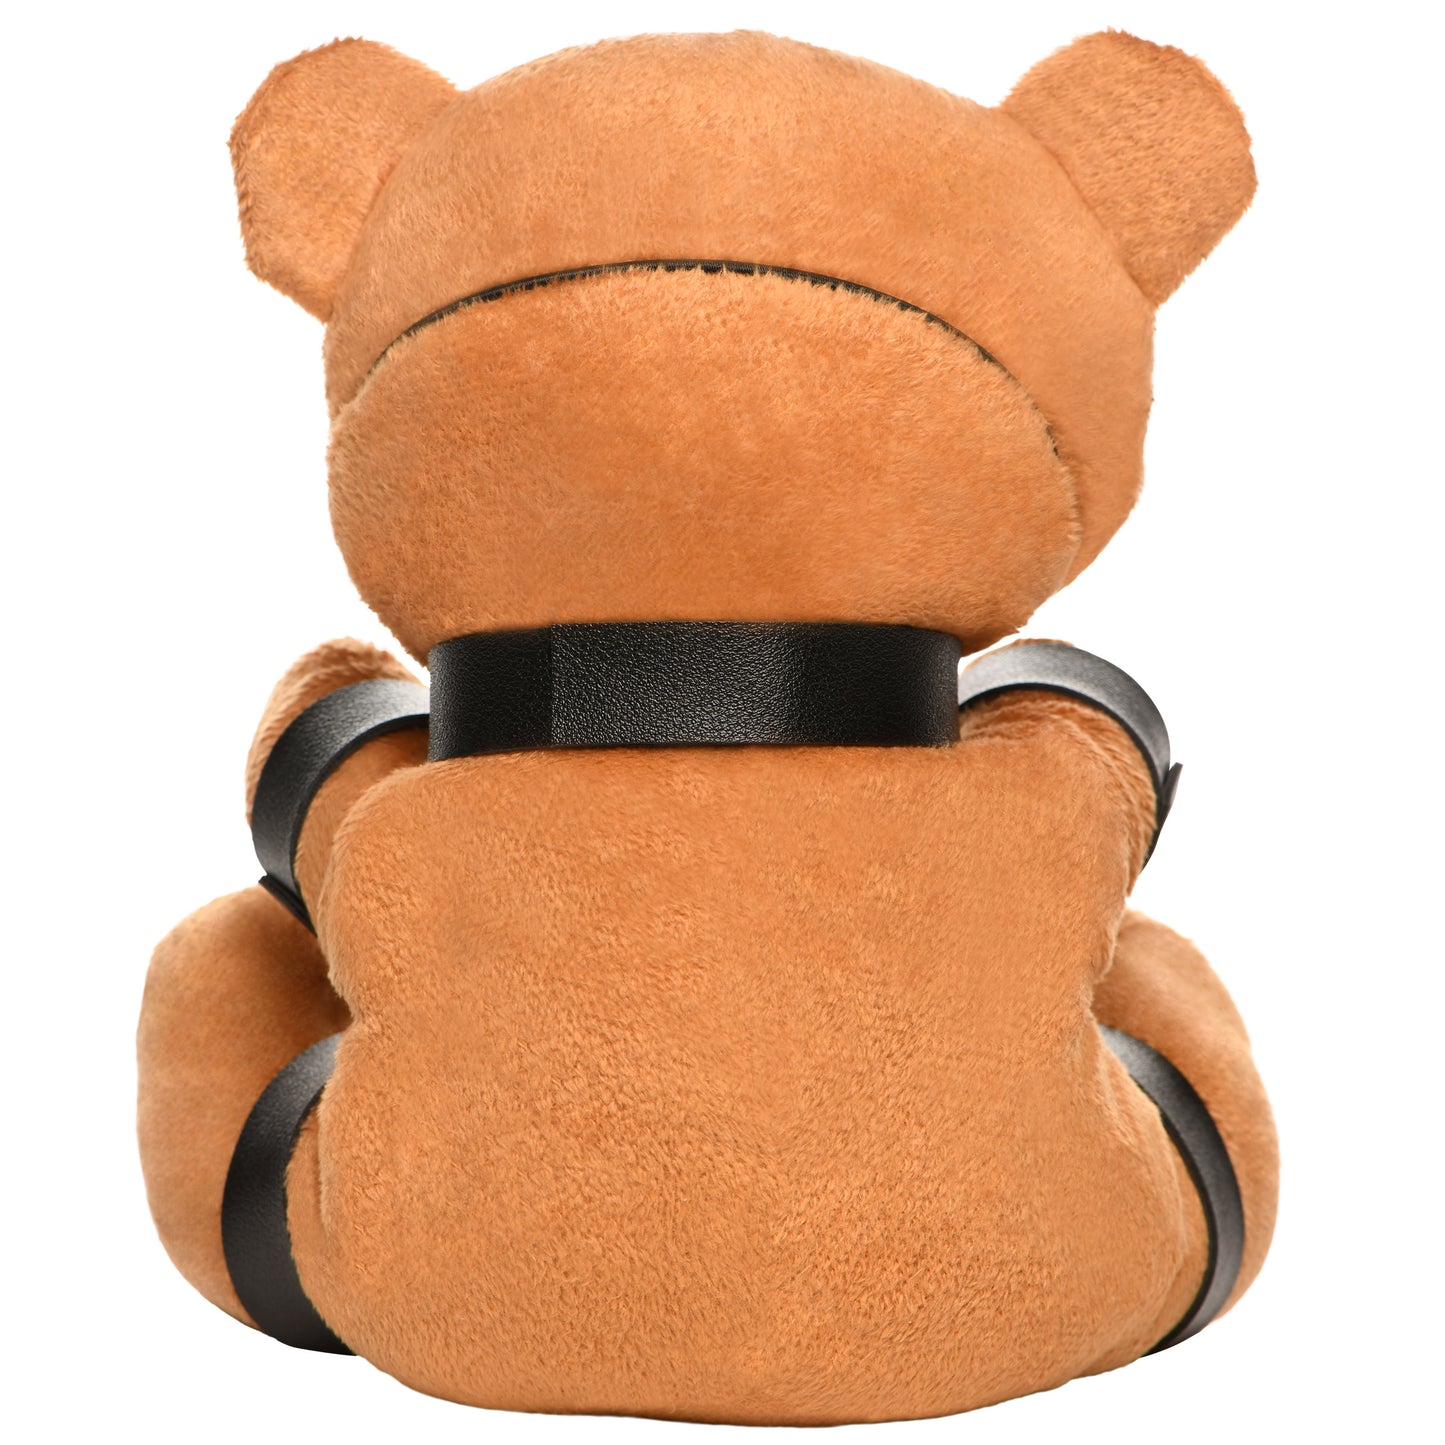 Gagged Bondage Teddy Bear